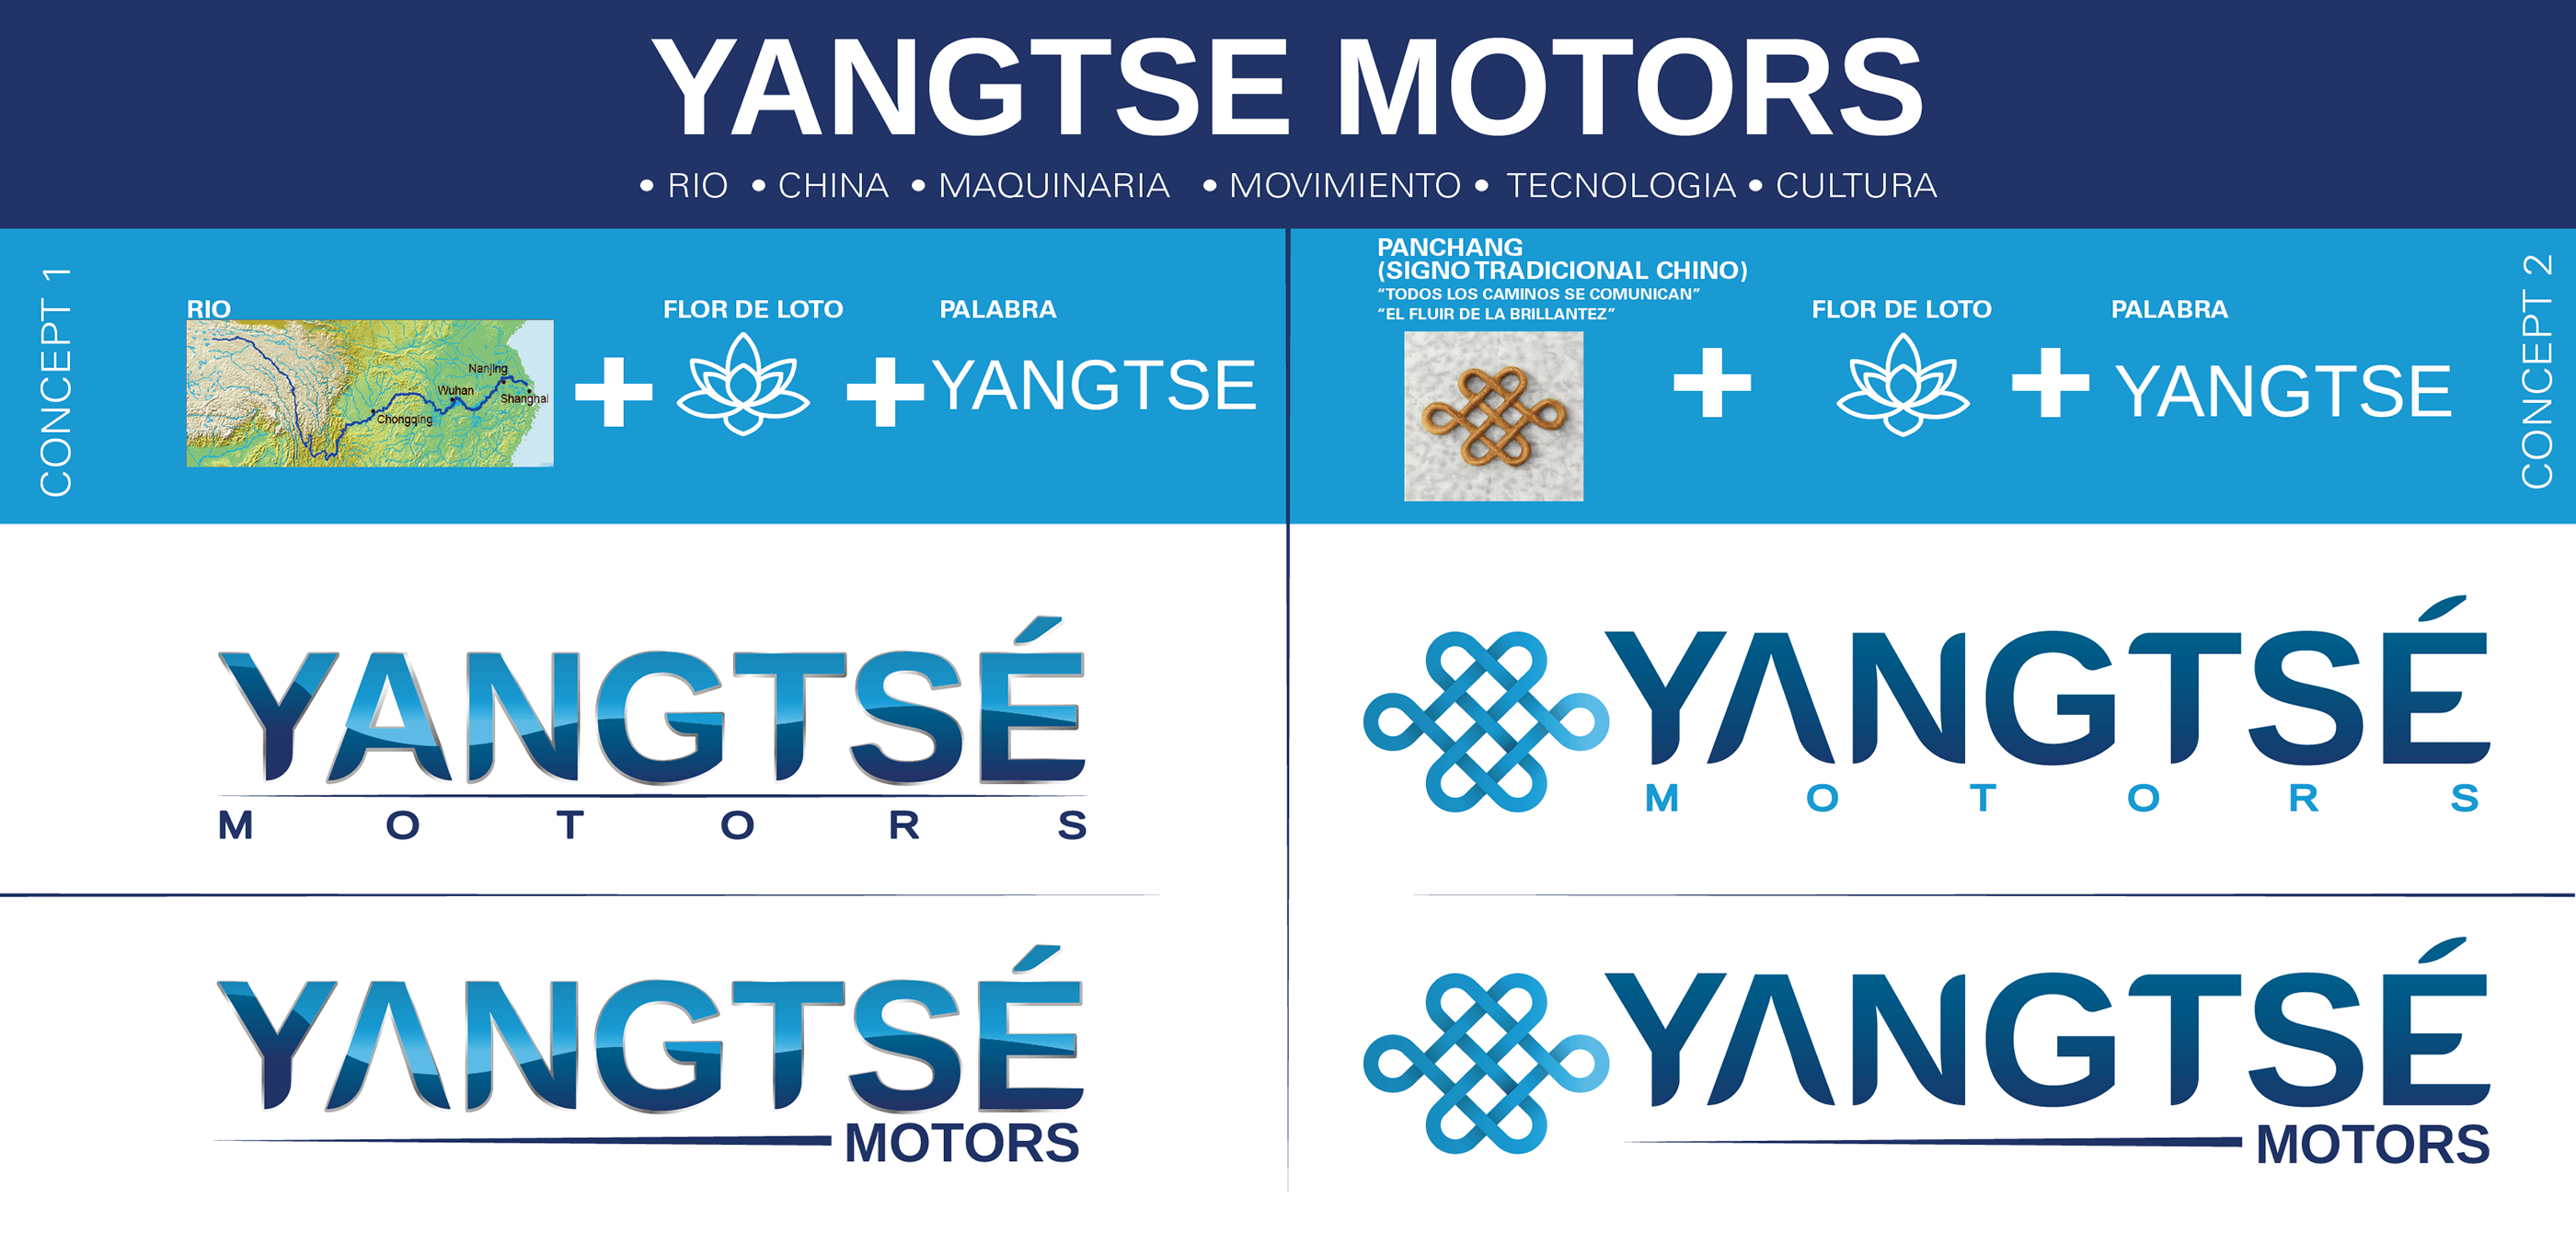 Yangtse Logo - Logo Yangtse Motors on Behance